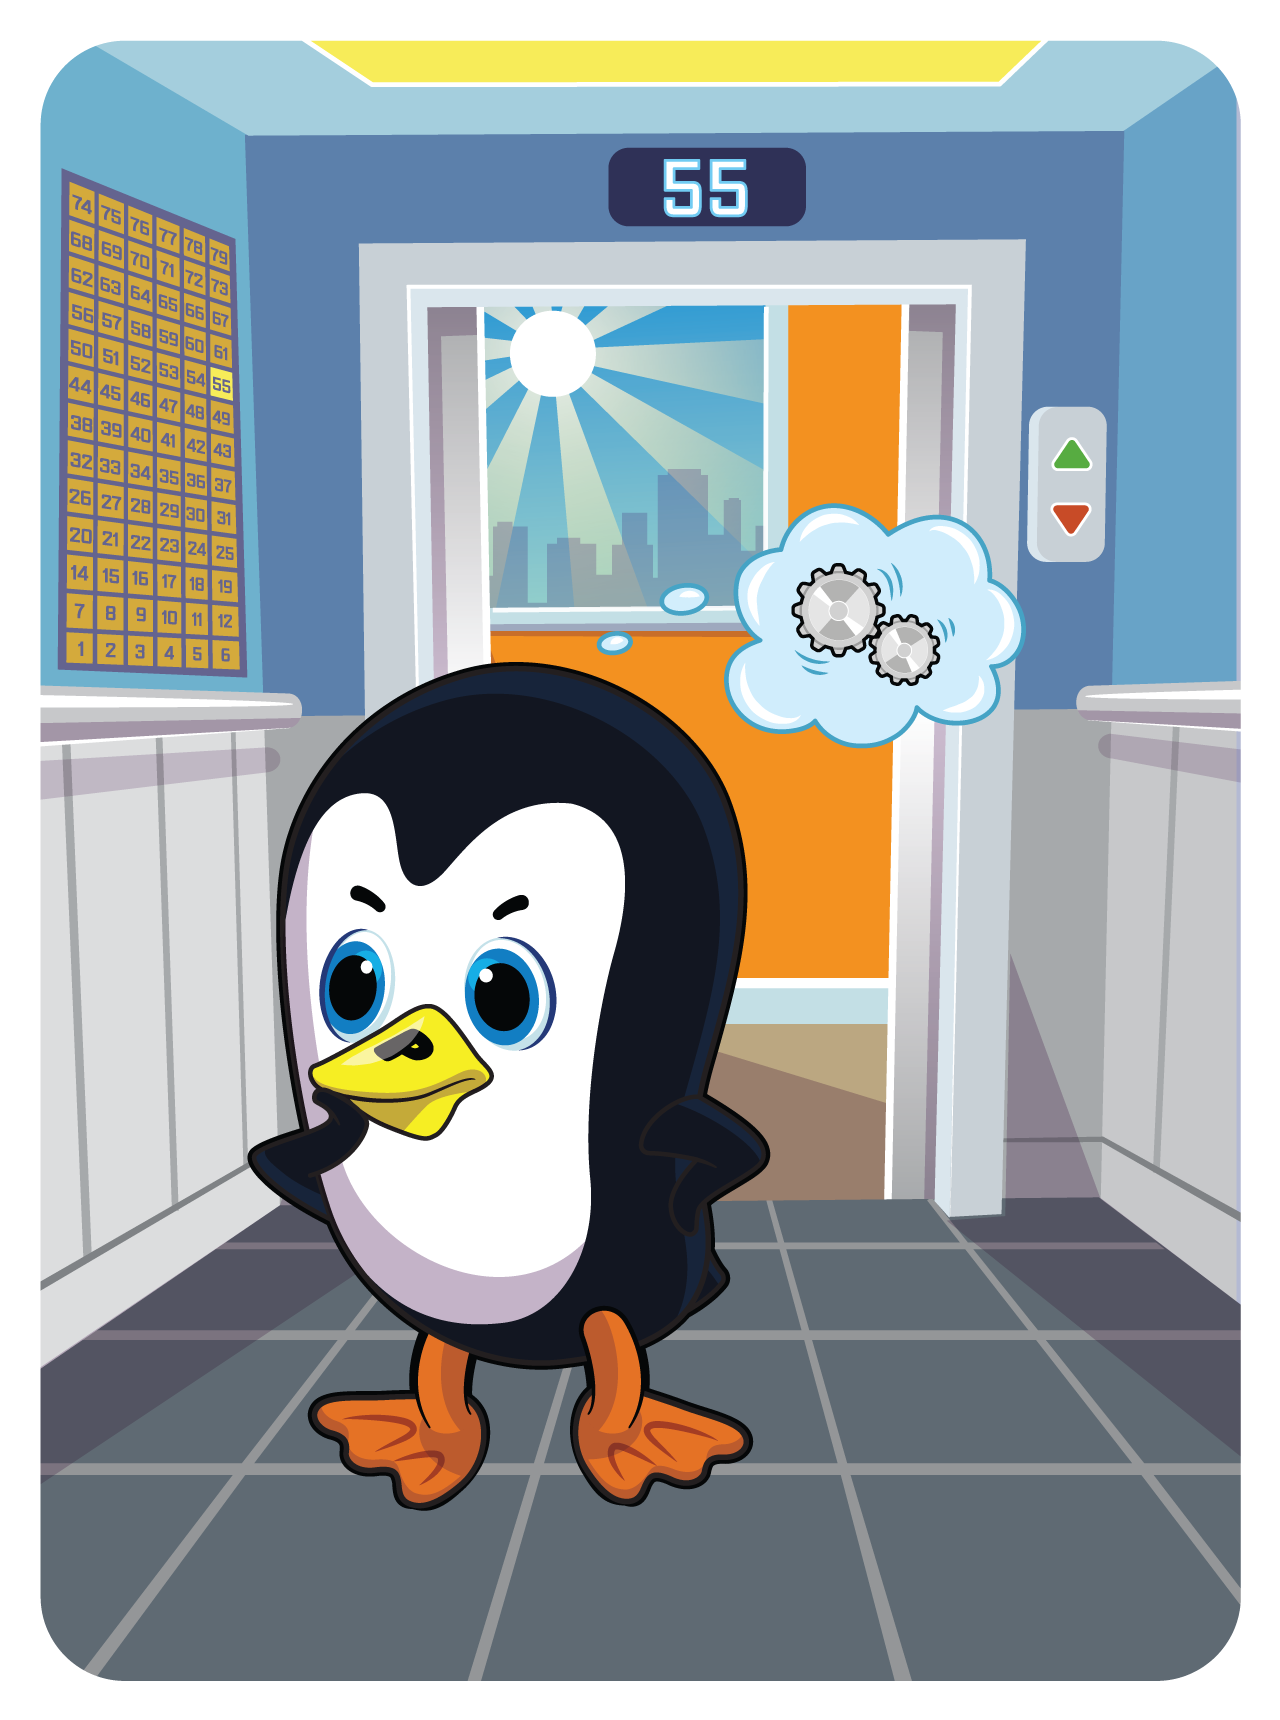 Persistent Penguin #53535